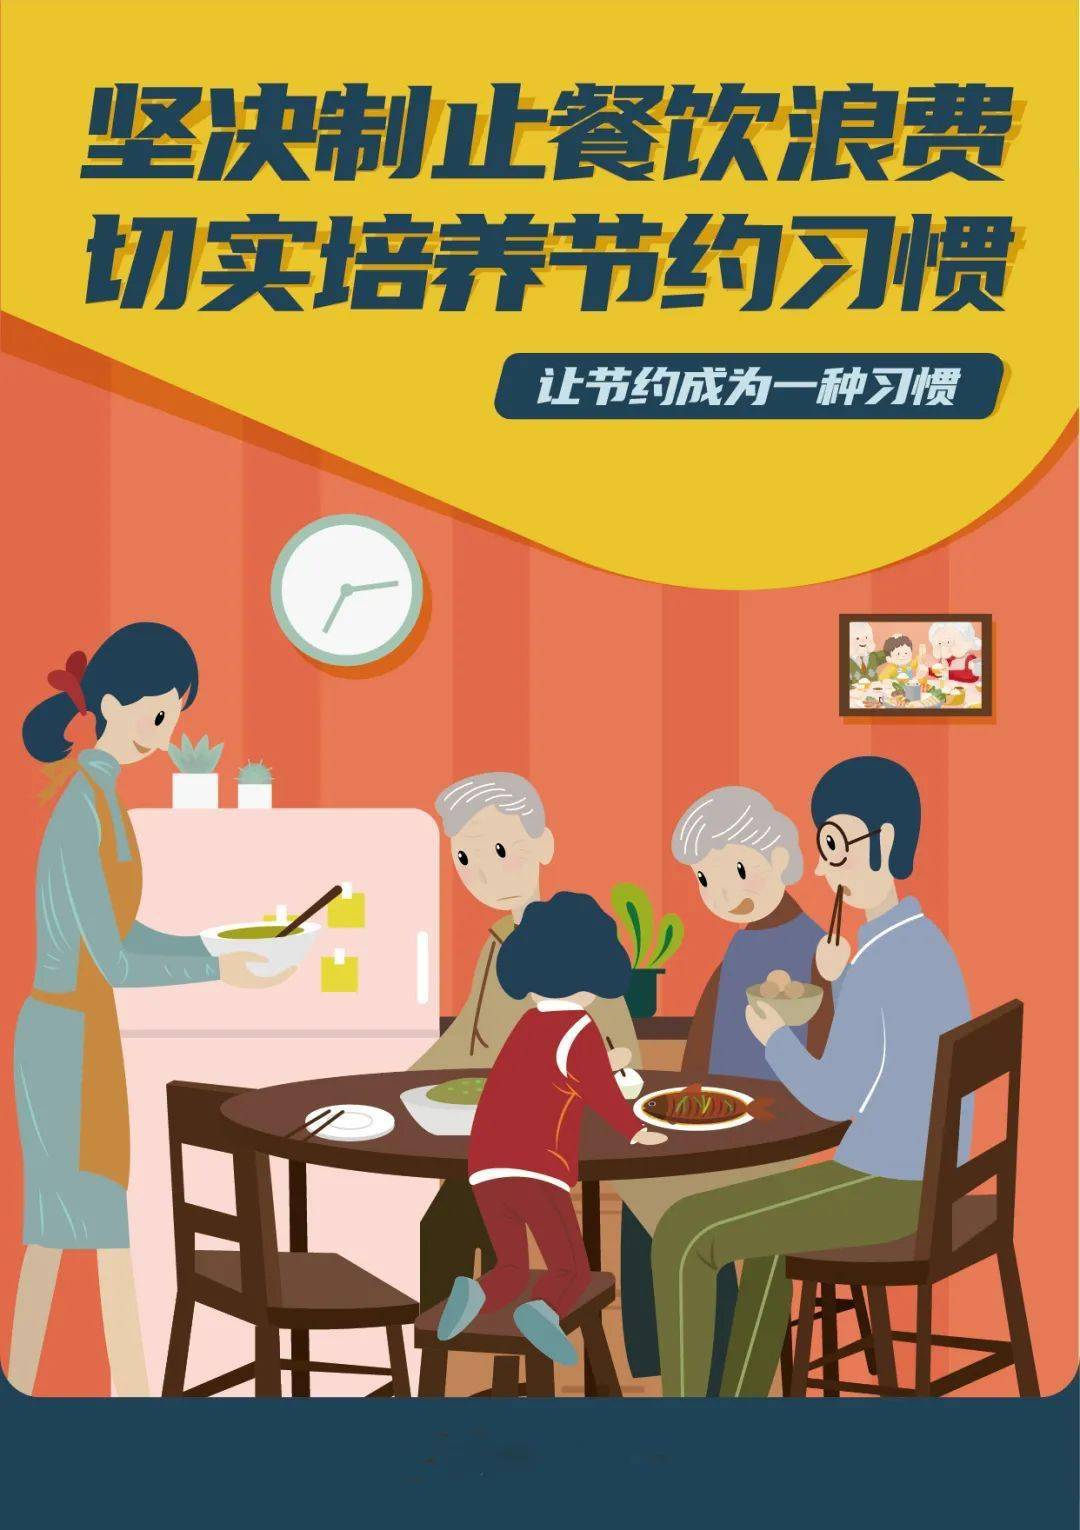 广州羊城通研发“防止餐饮浪费神器”企业云订餐系统